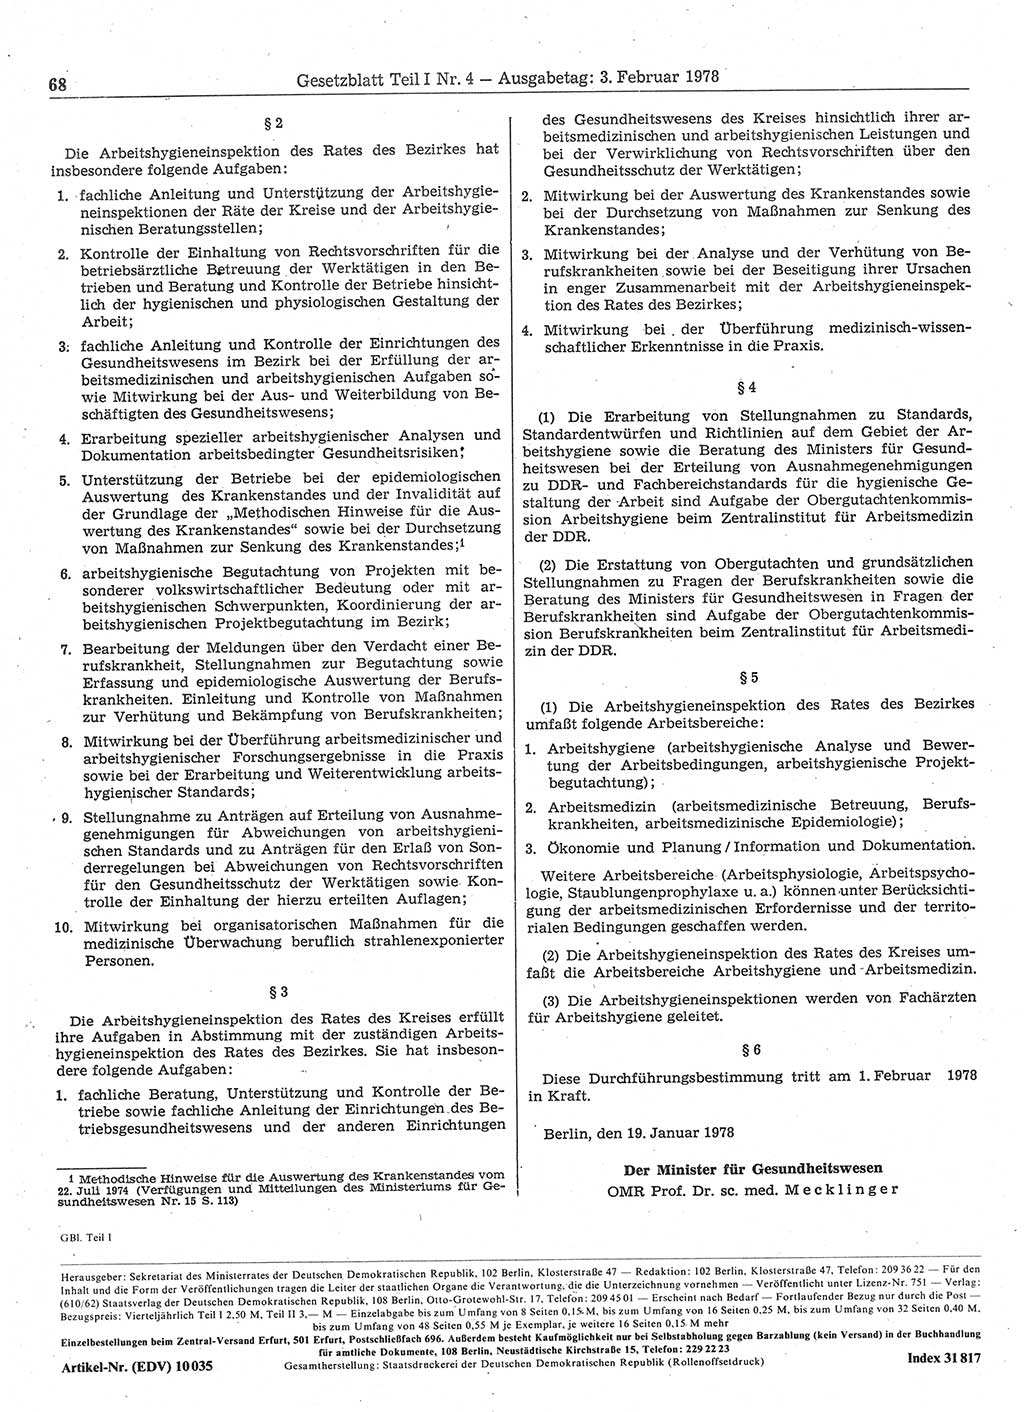 Gesetzblatt (GBl.) der Deutschen Demokratischen Republik (DDR) Teil Ⅰ 1978, Seite 68 (GBl. DDR Ⅰ 1978, S. 68)